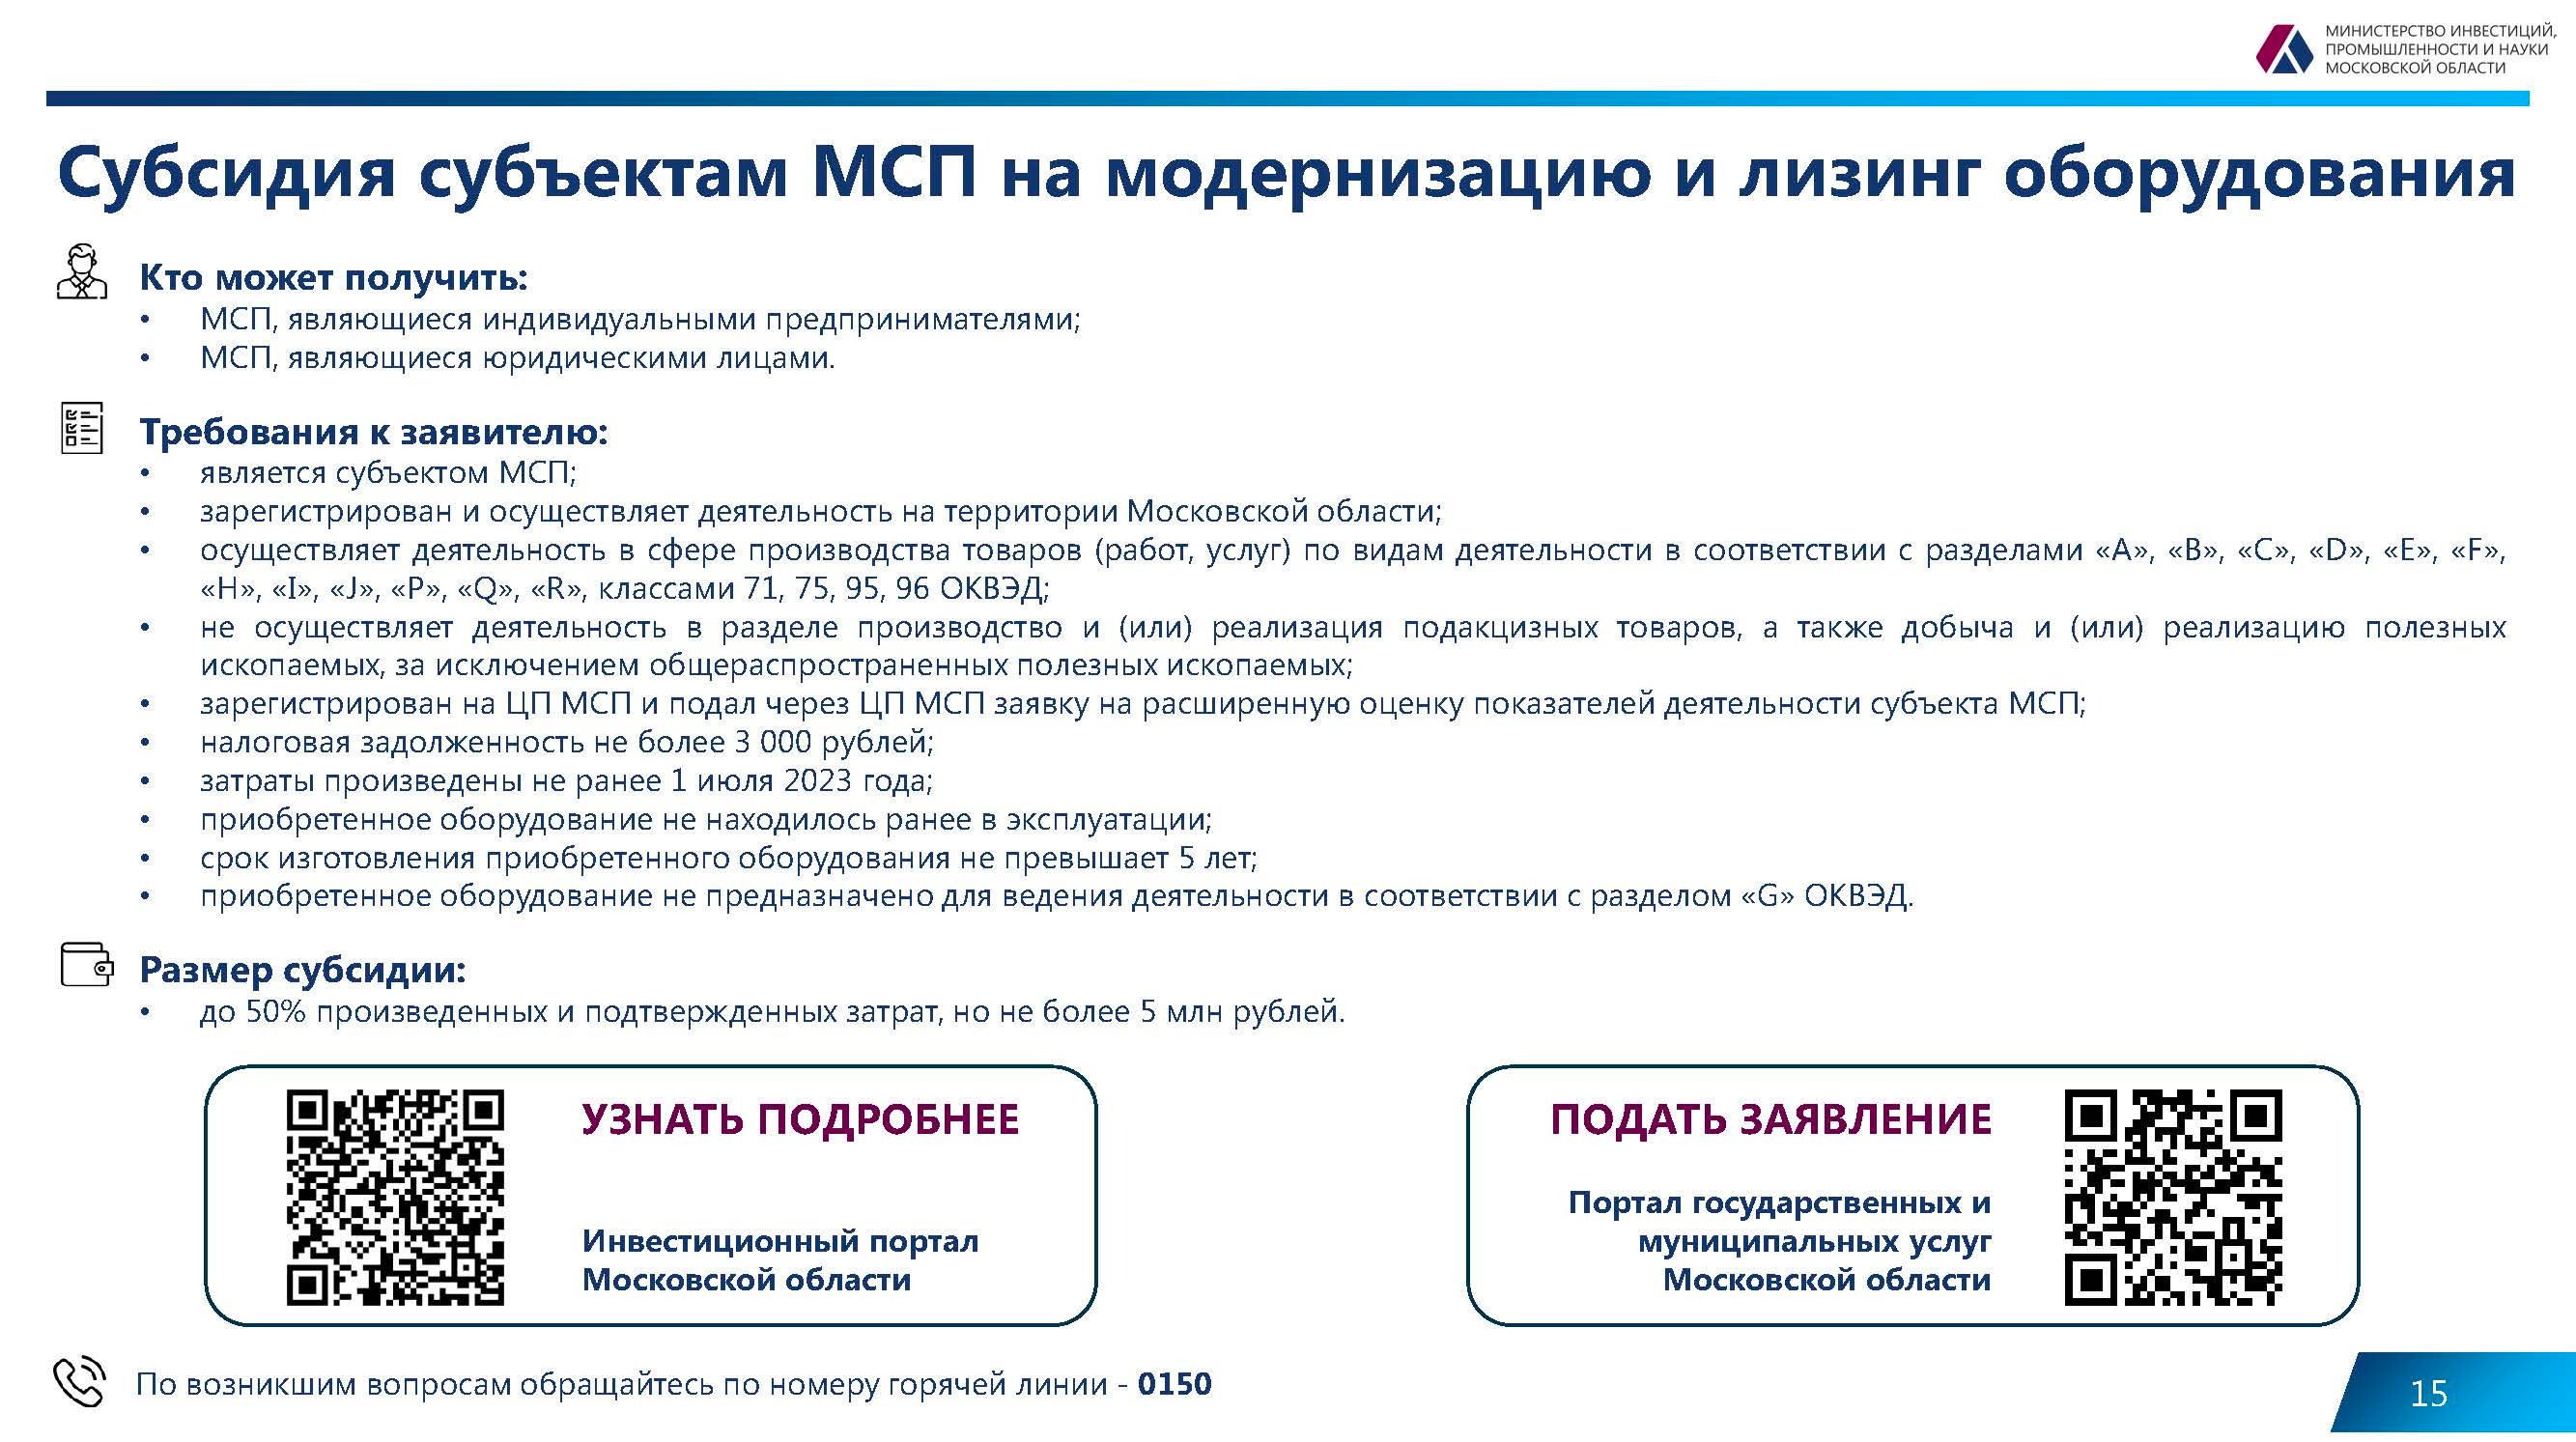 Действующие меры поддержки бизнеса на территории Московской области